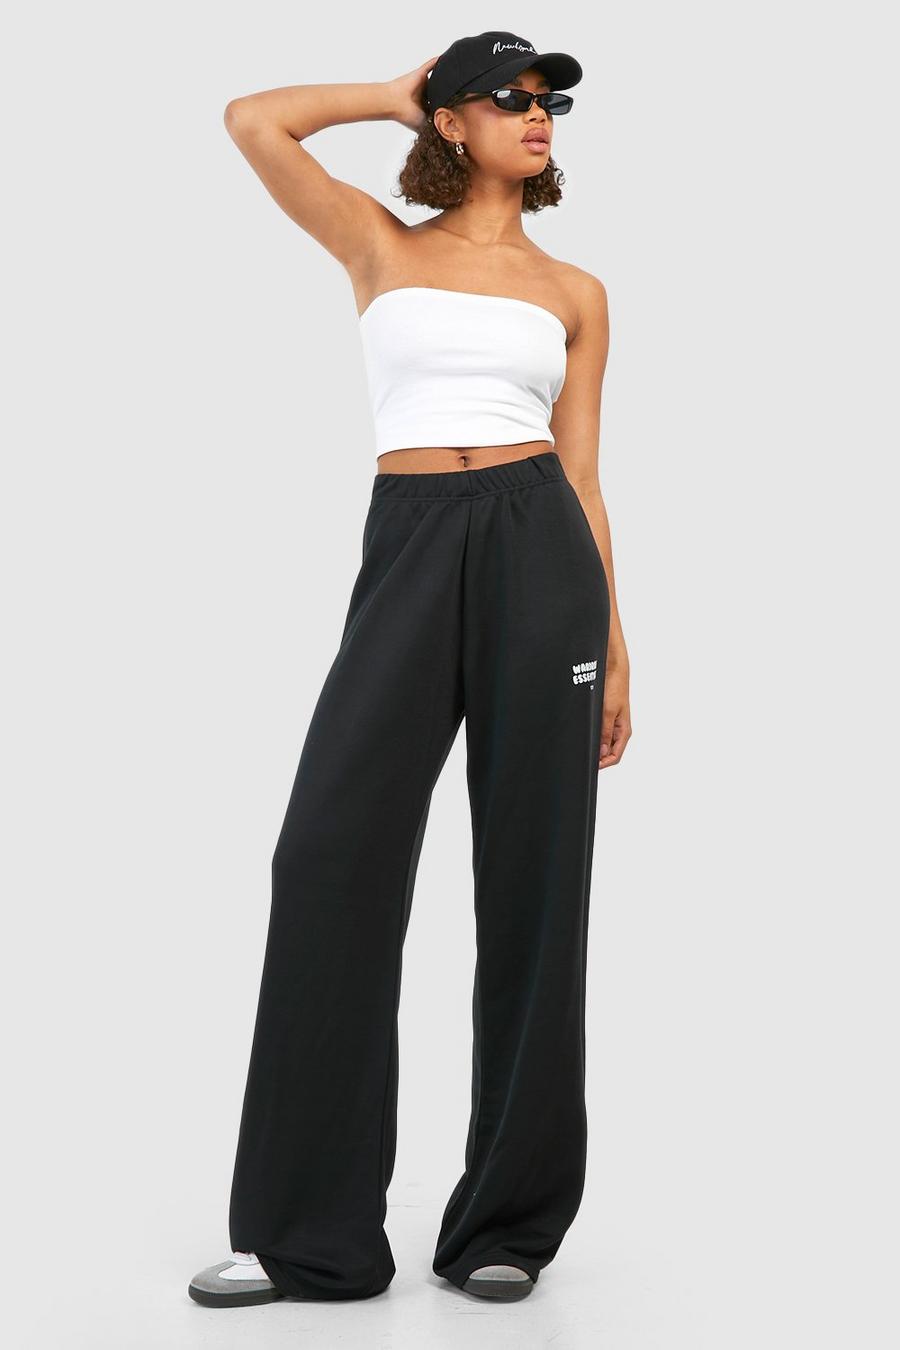 Pantaloni tuta Tall a gamba ampia con stampa Wardrobe Essentials, Black